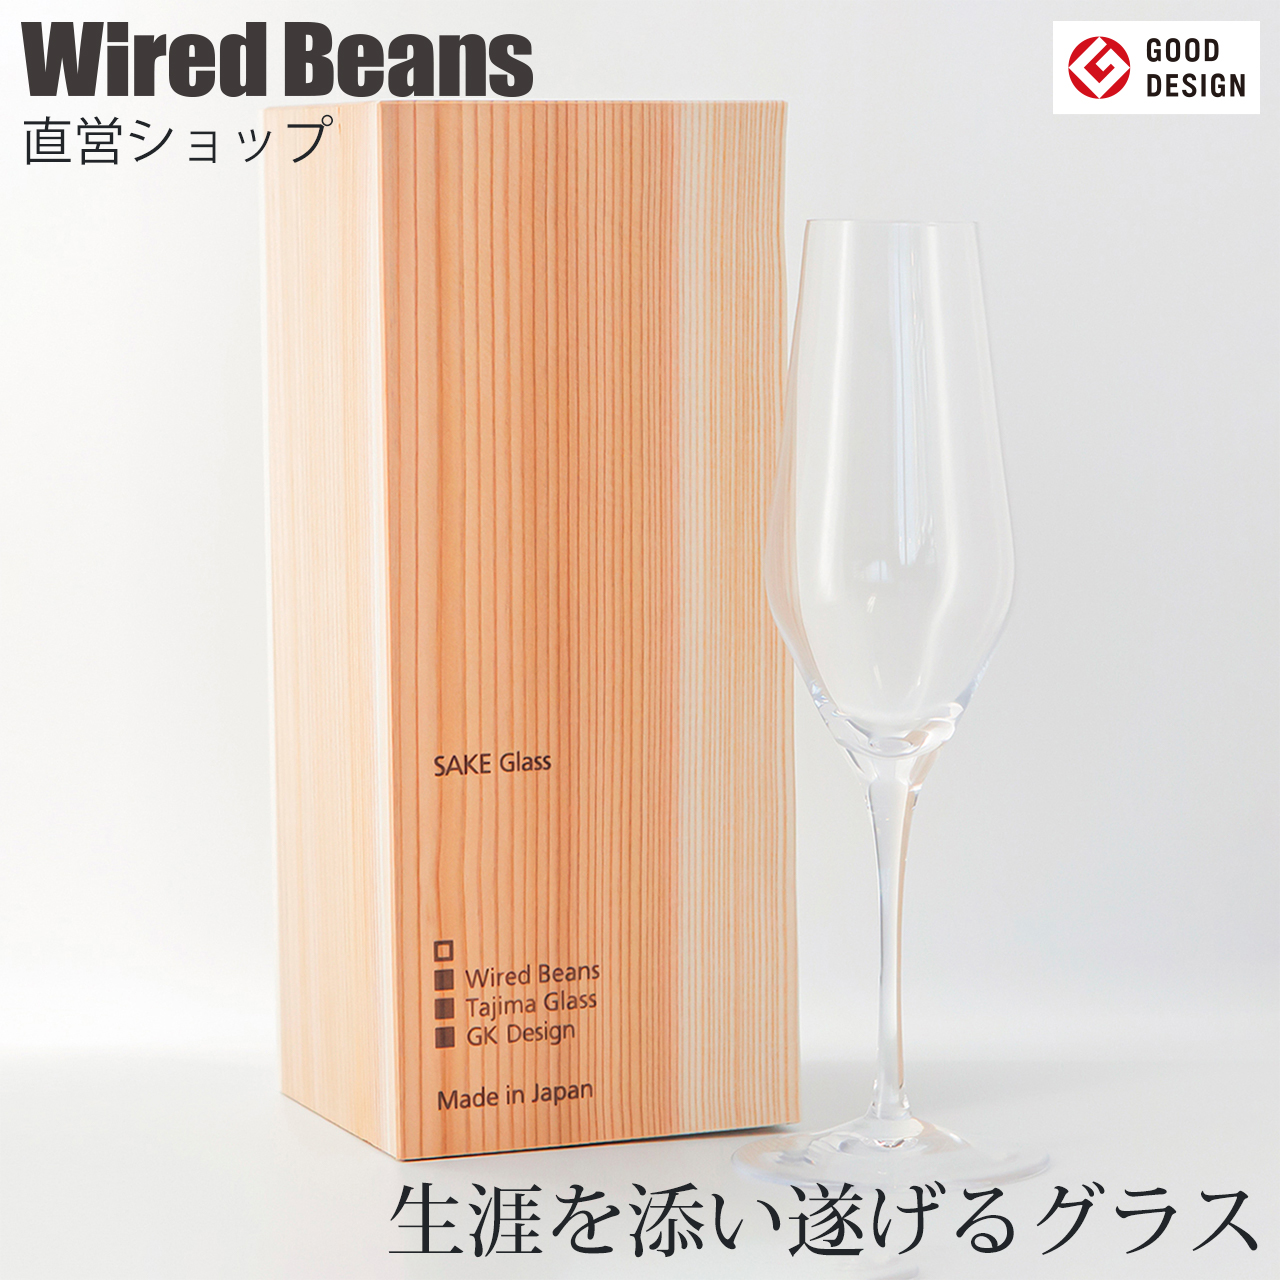 Wired Beans メーカー直販 日本酒グラス シャンパングラス 生涯を添い遂げるグラス SAKEグラス UMAKUCHI トランスペアレント 透明 生涯補償付き 最安価格 グッドデザイン賞 ワイヤードビーンズ 残りわずか 日本製 国産杉箱入り プレゼント ギフト